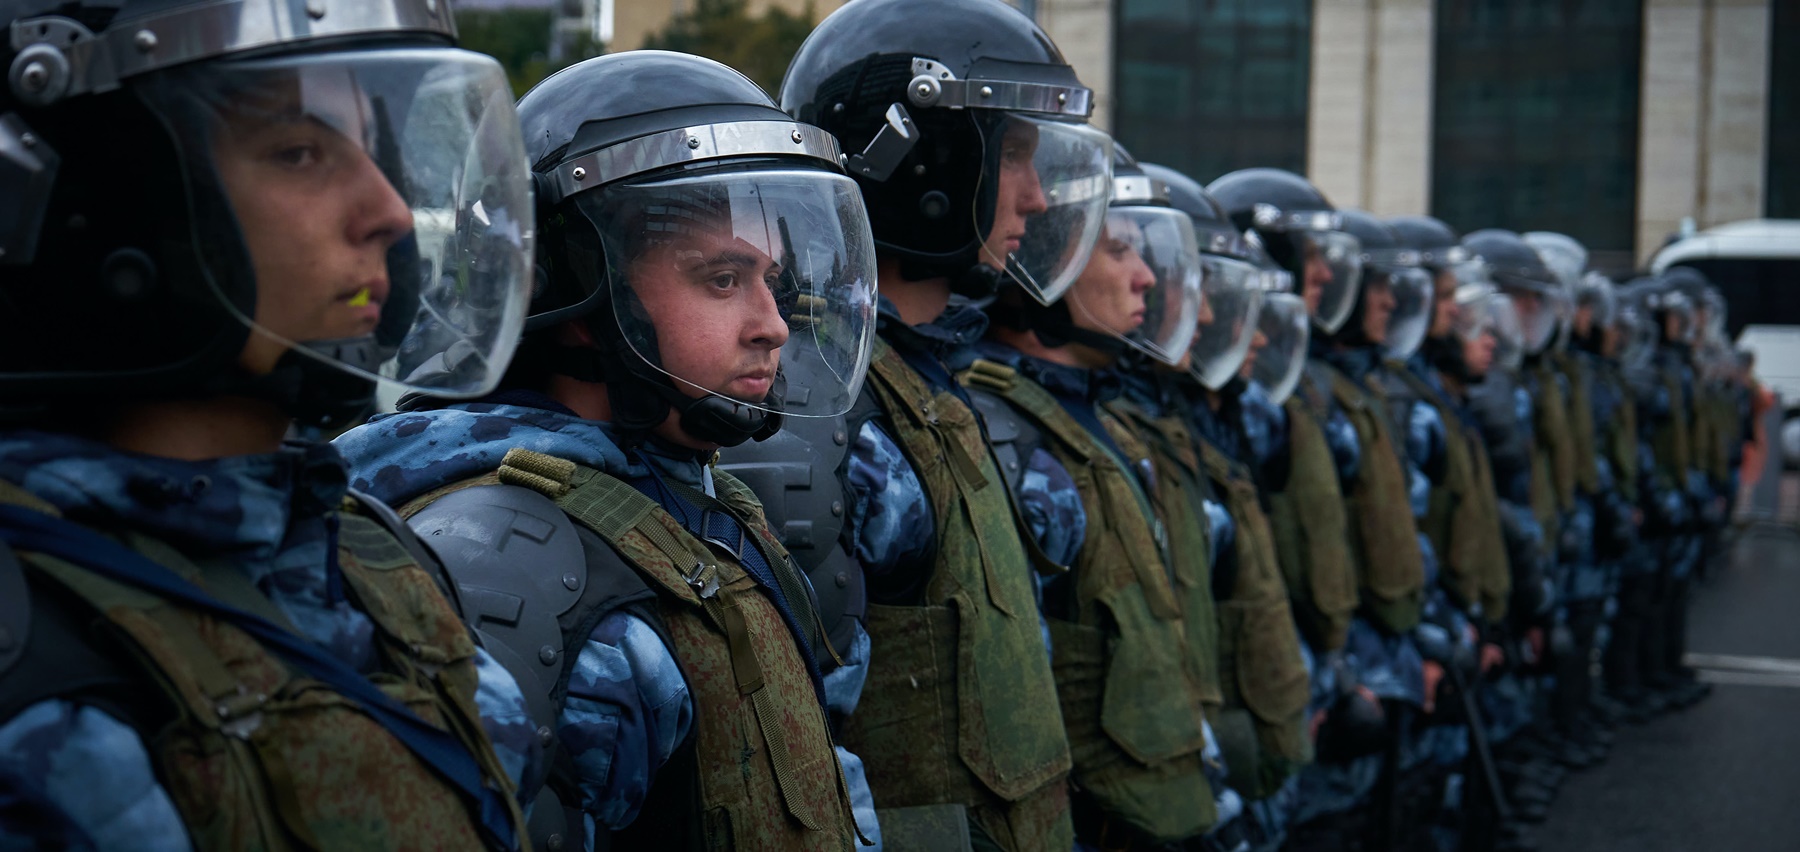 Αστυνομικός χτυπάει διαδηλωτή: Χάος με την επιστράτευση στη Ρωσία